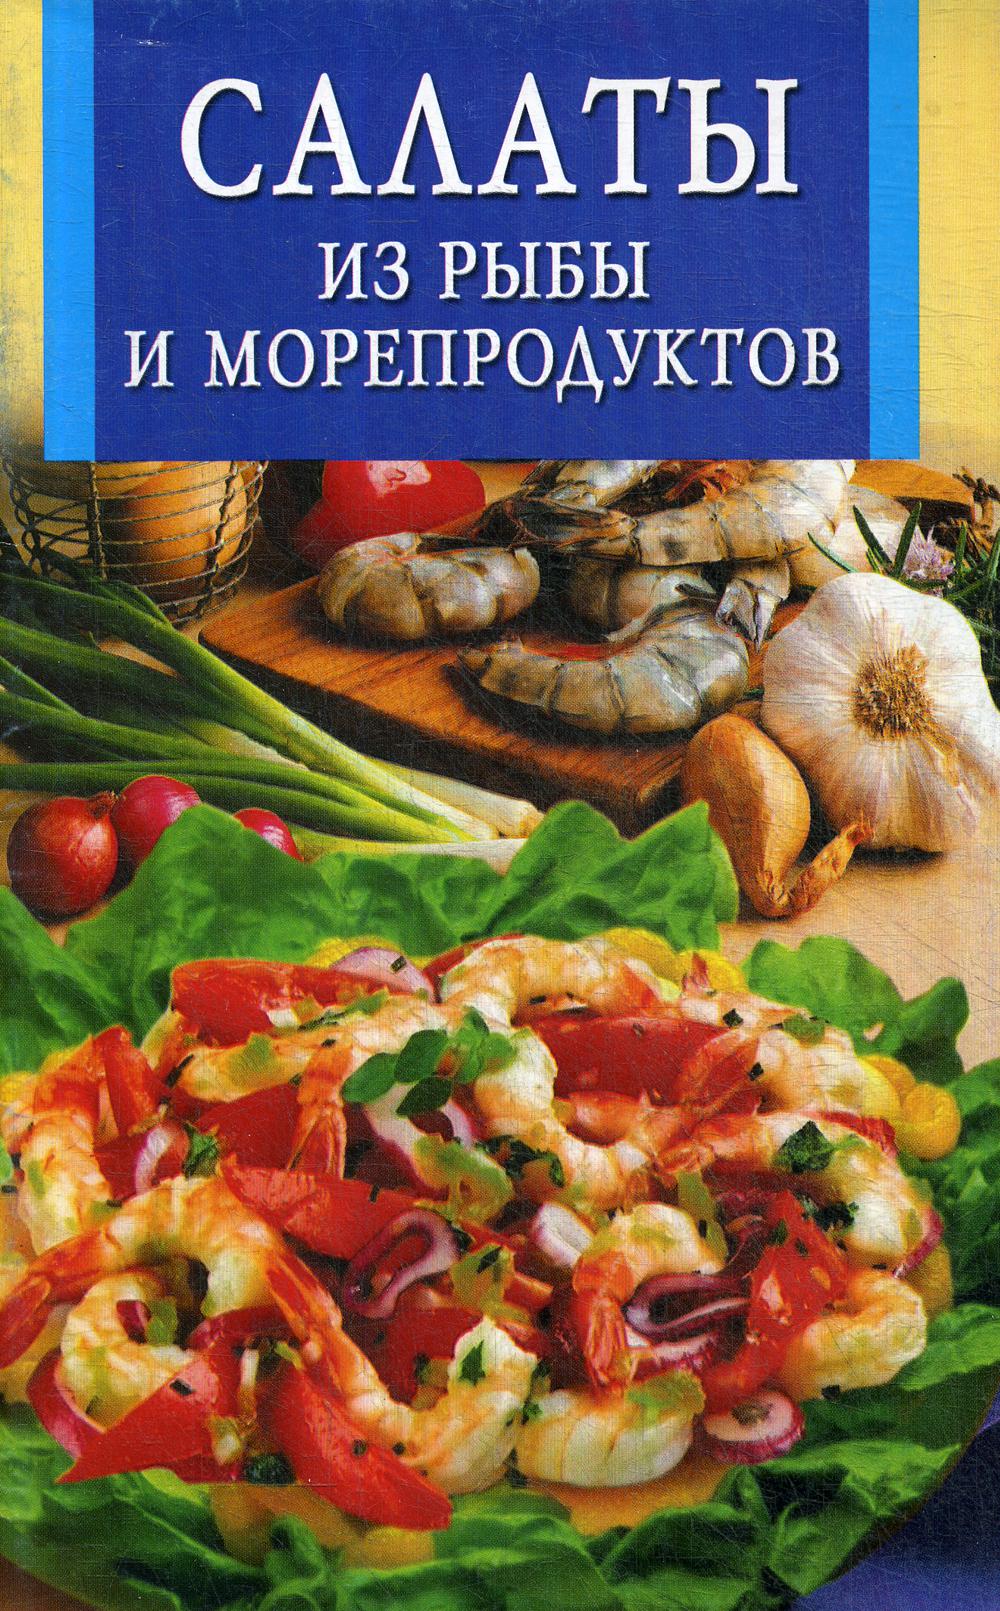 фото Книга салаты из рыбы и морепродуктов владис